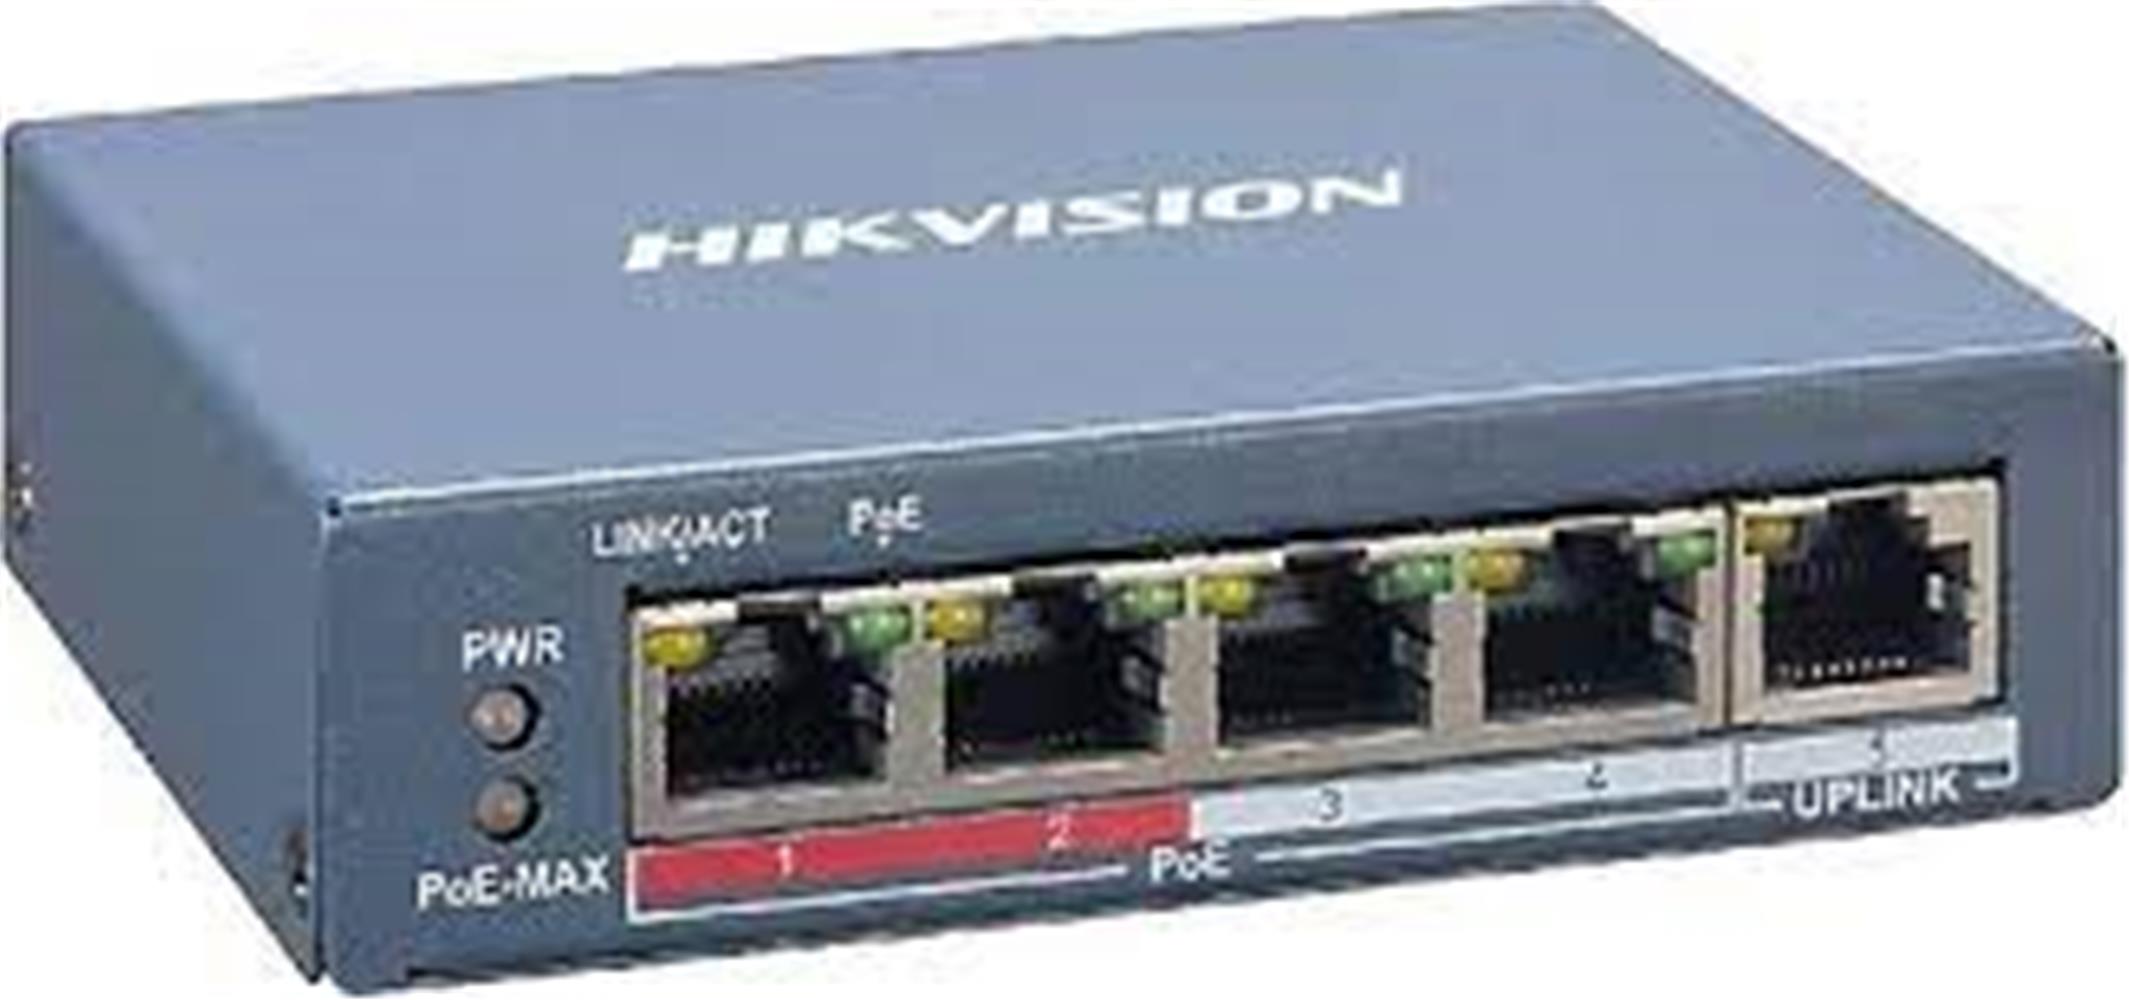 Hikvision DS-3E1105P-EI 4 PORT 10-100 4 PORT POE+ 65W Yönetilemez Switch